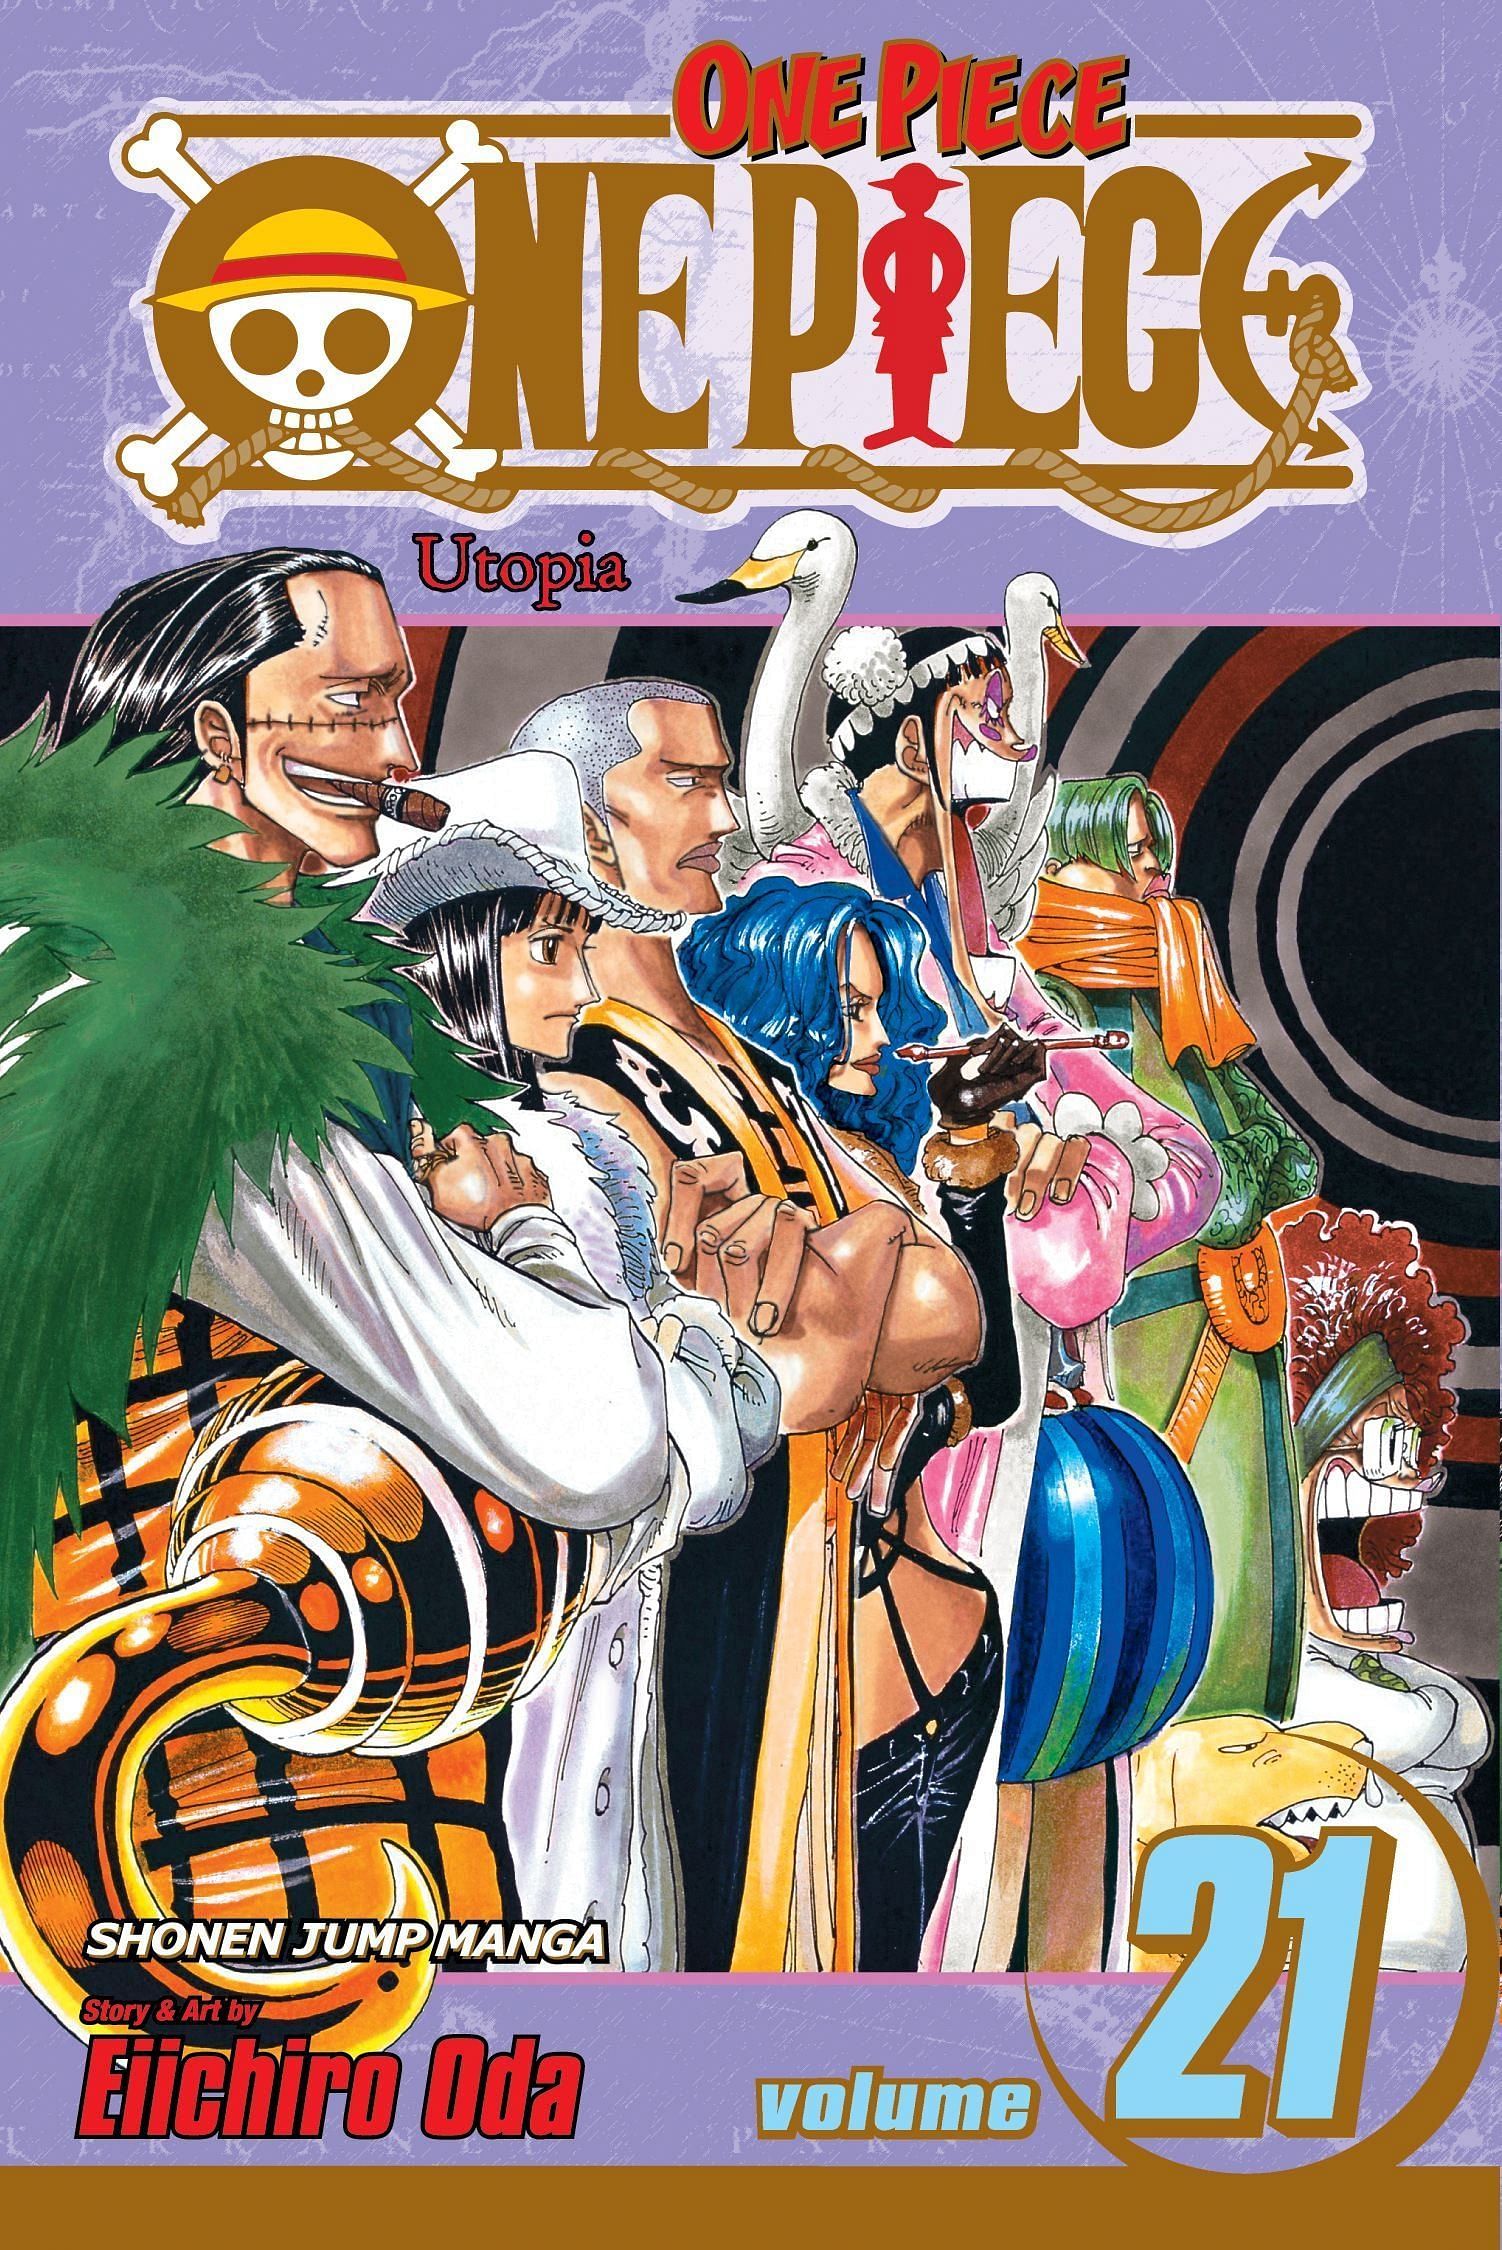 The cover art for One Piece Volume 21 (Image via Shueisha)